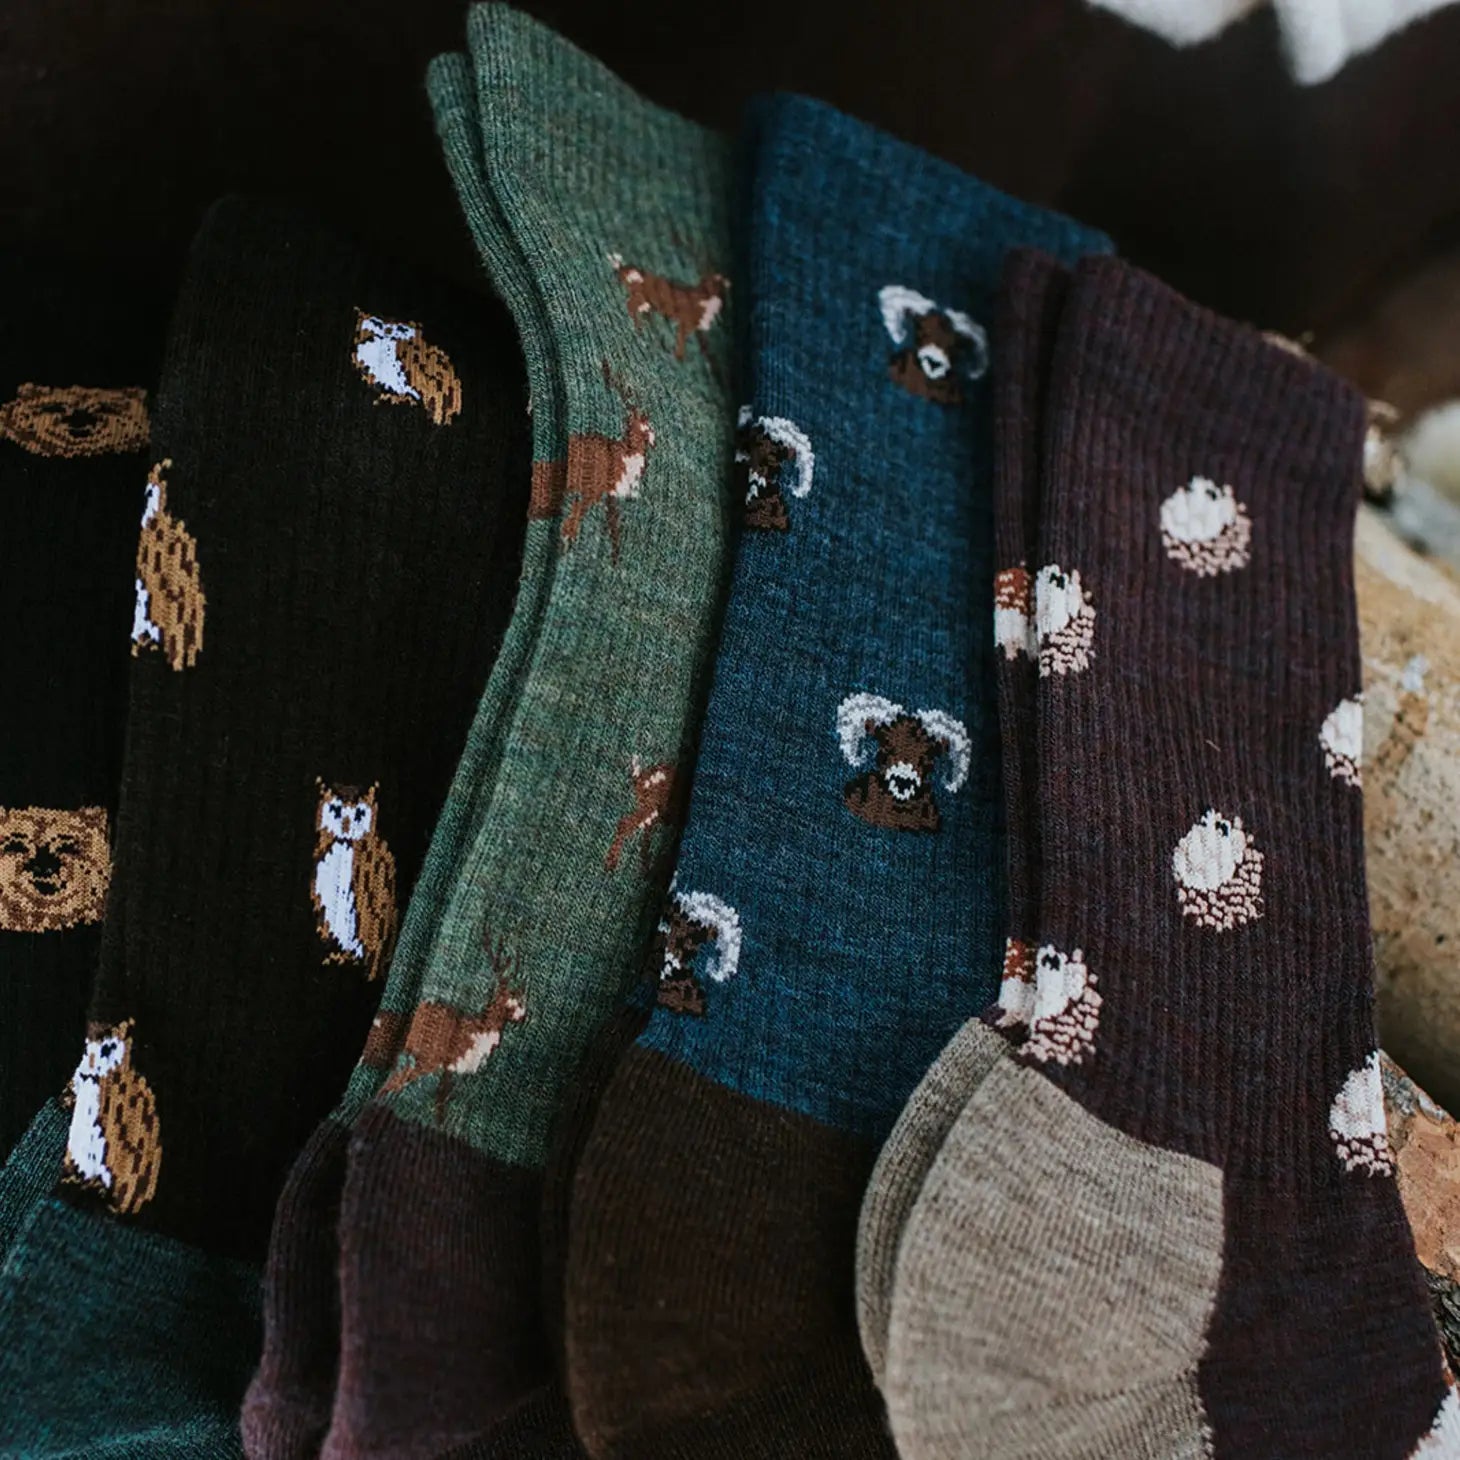 Friday Sock Co. - Men's Socks Deer Nature & Outdoors